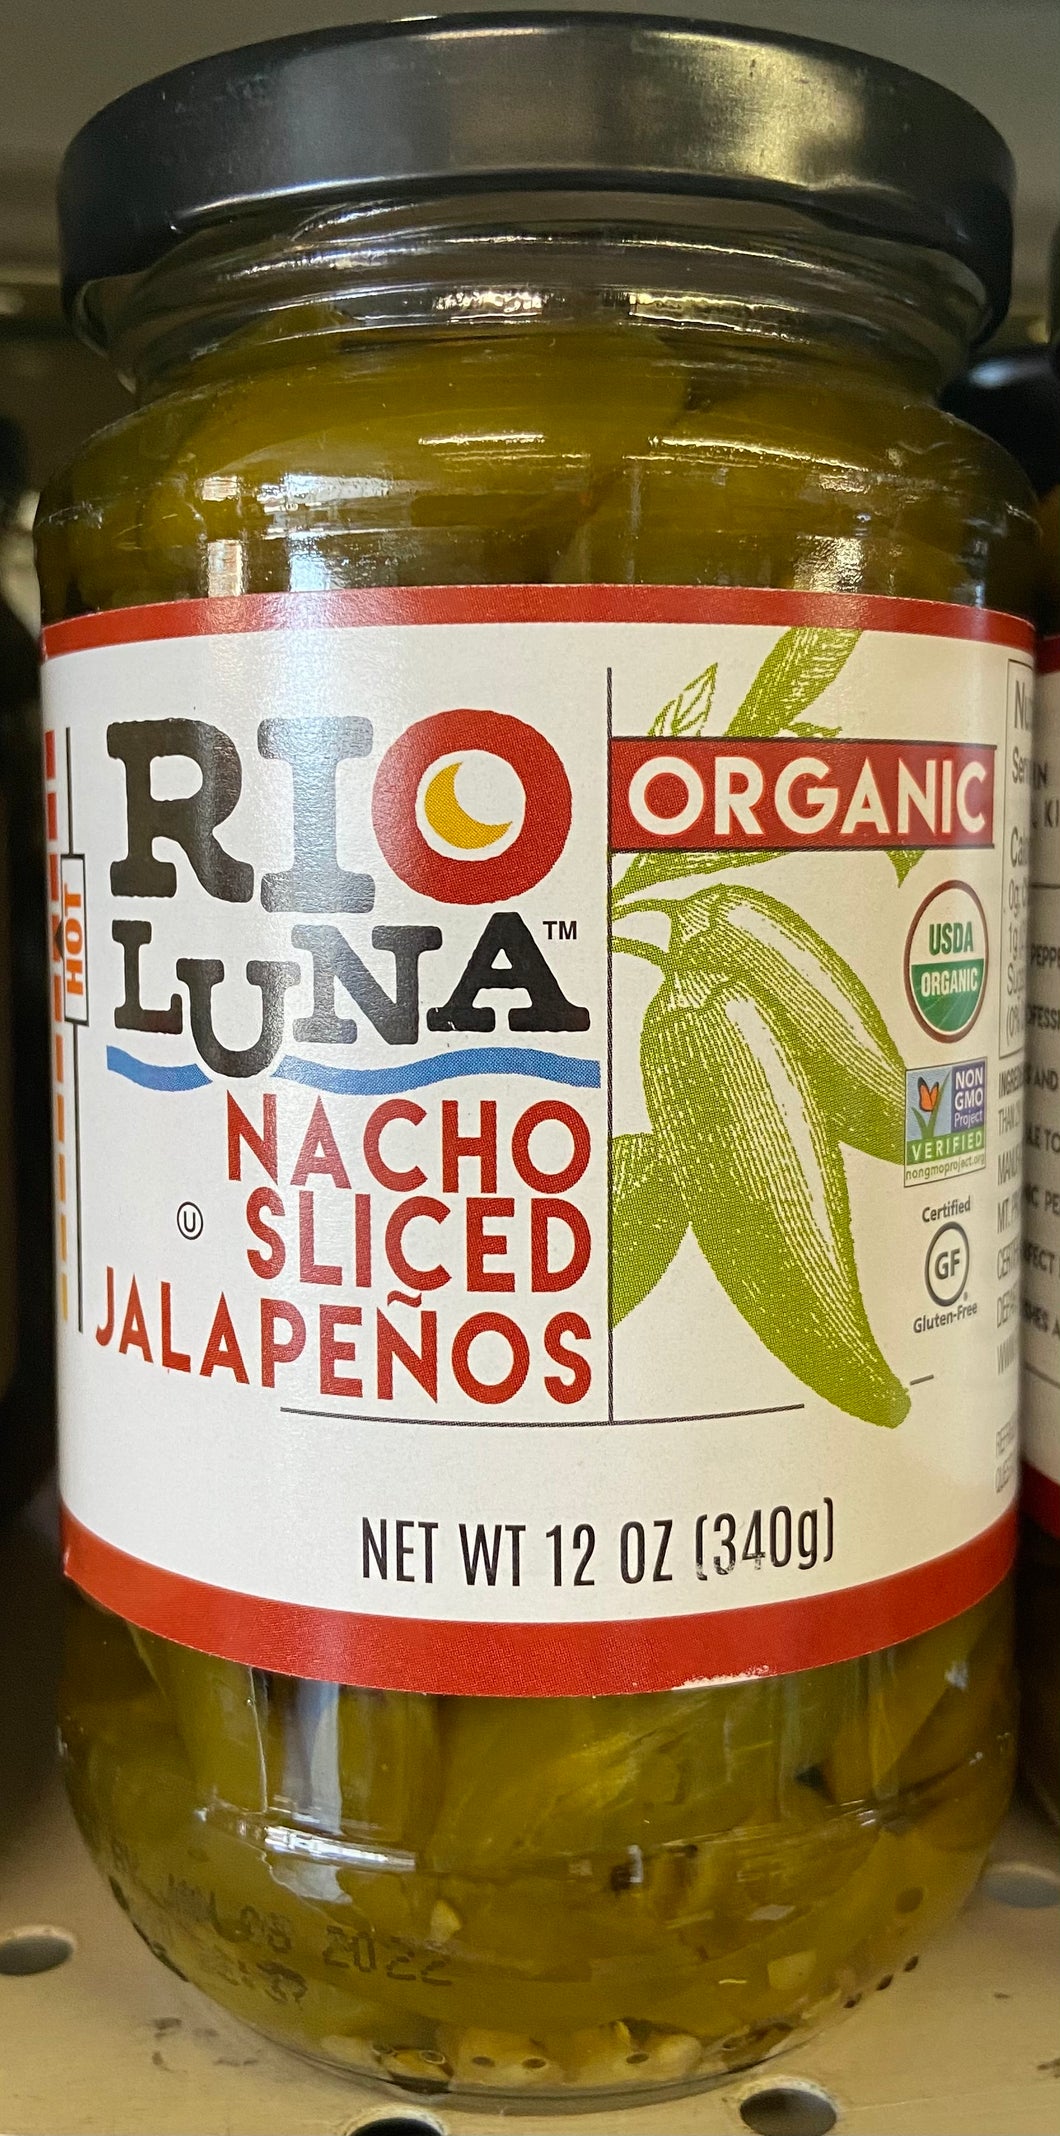 Peppers, Nacho Sliced Jalapenos, Hot Organic, Rio Luna